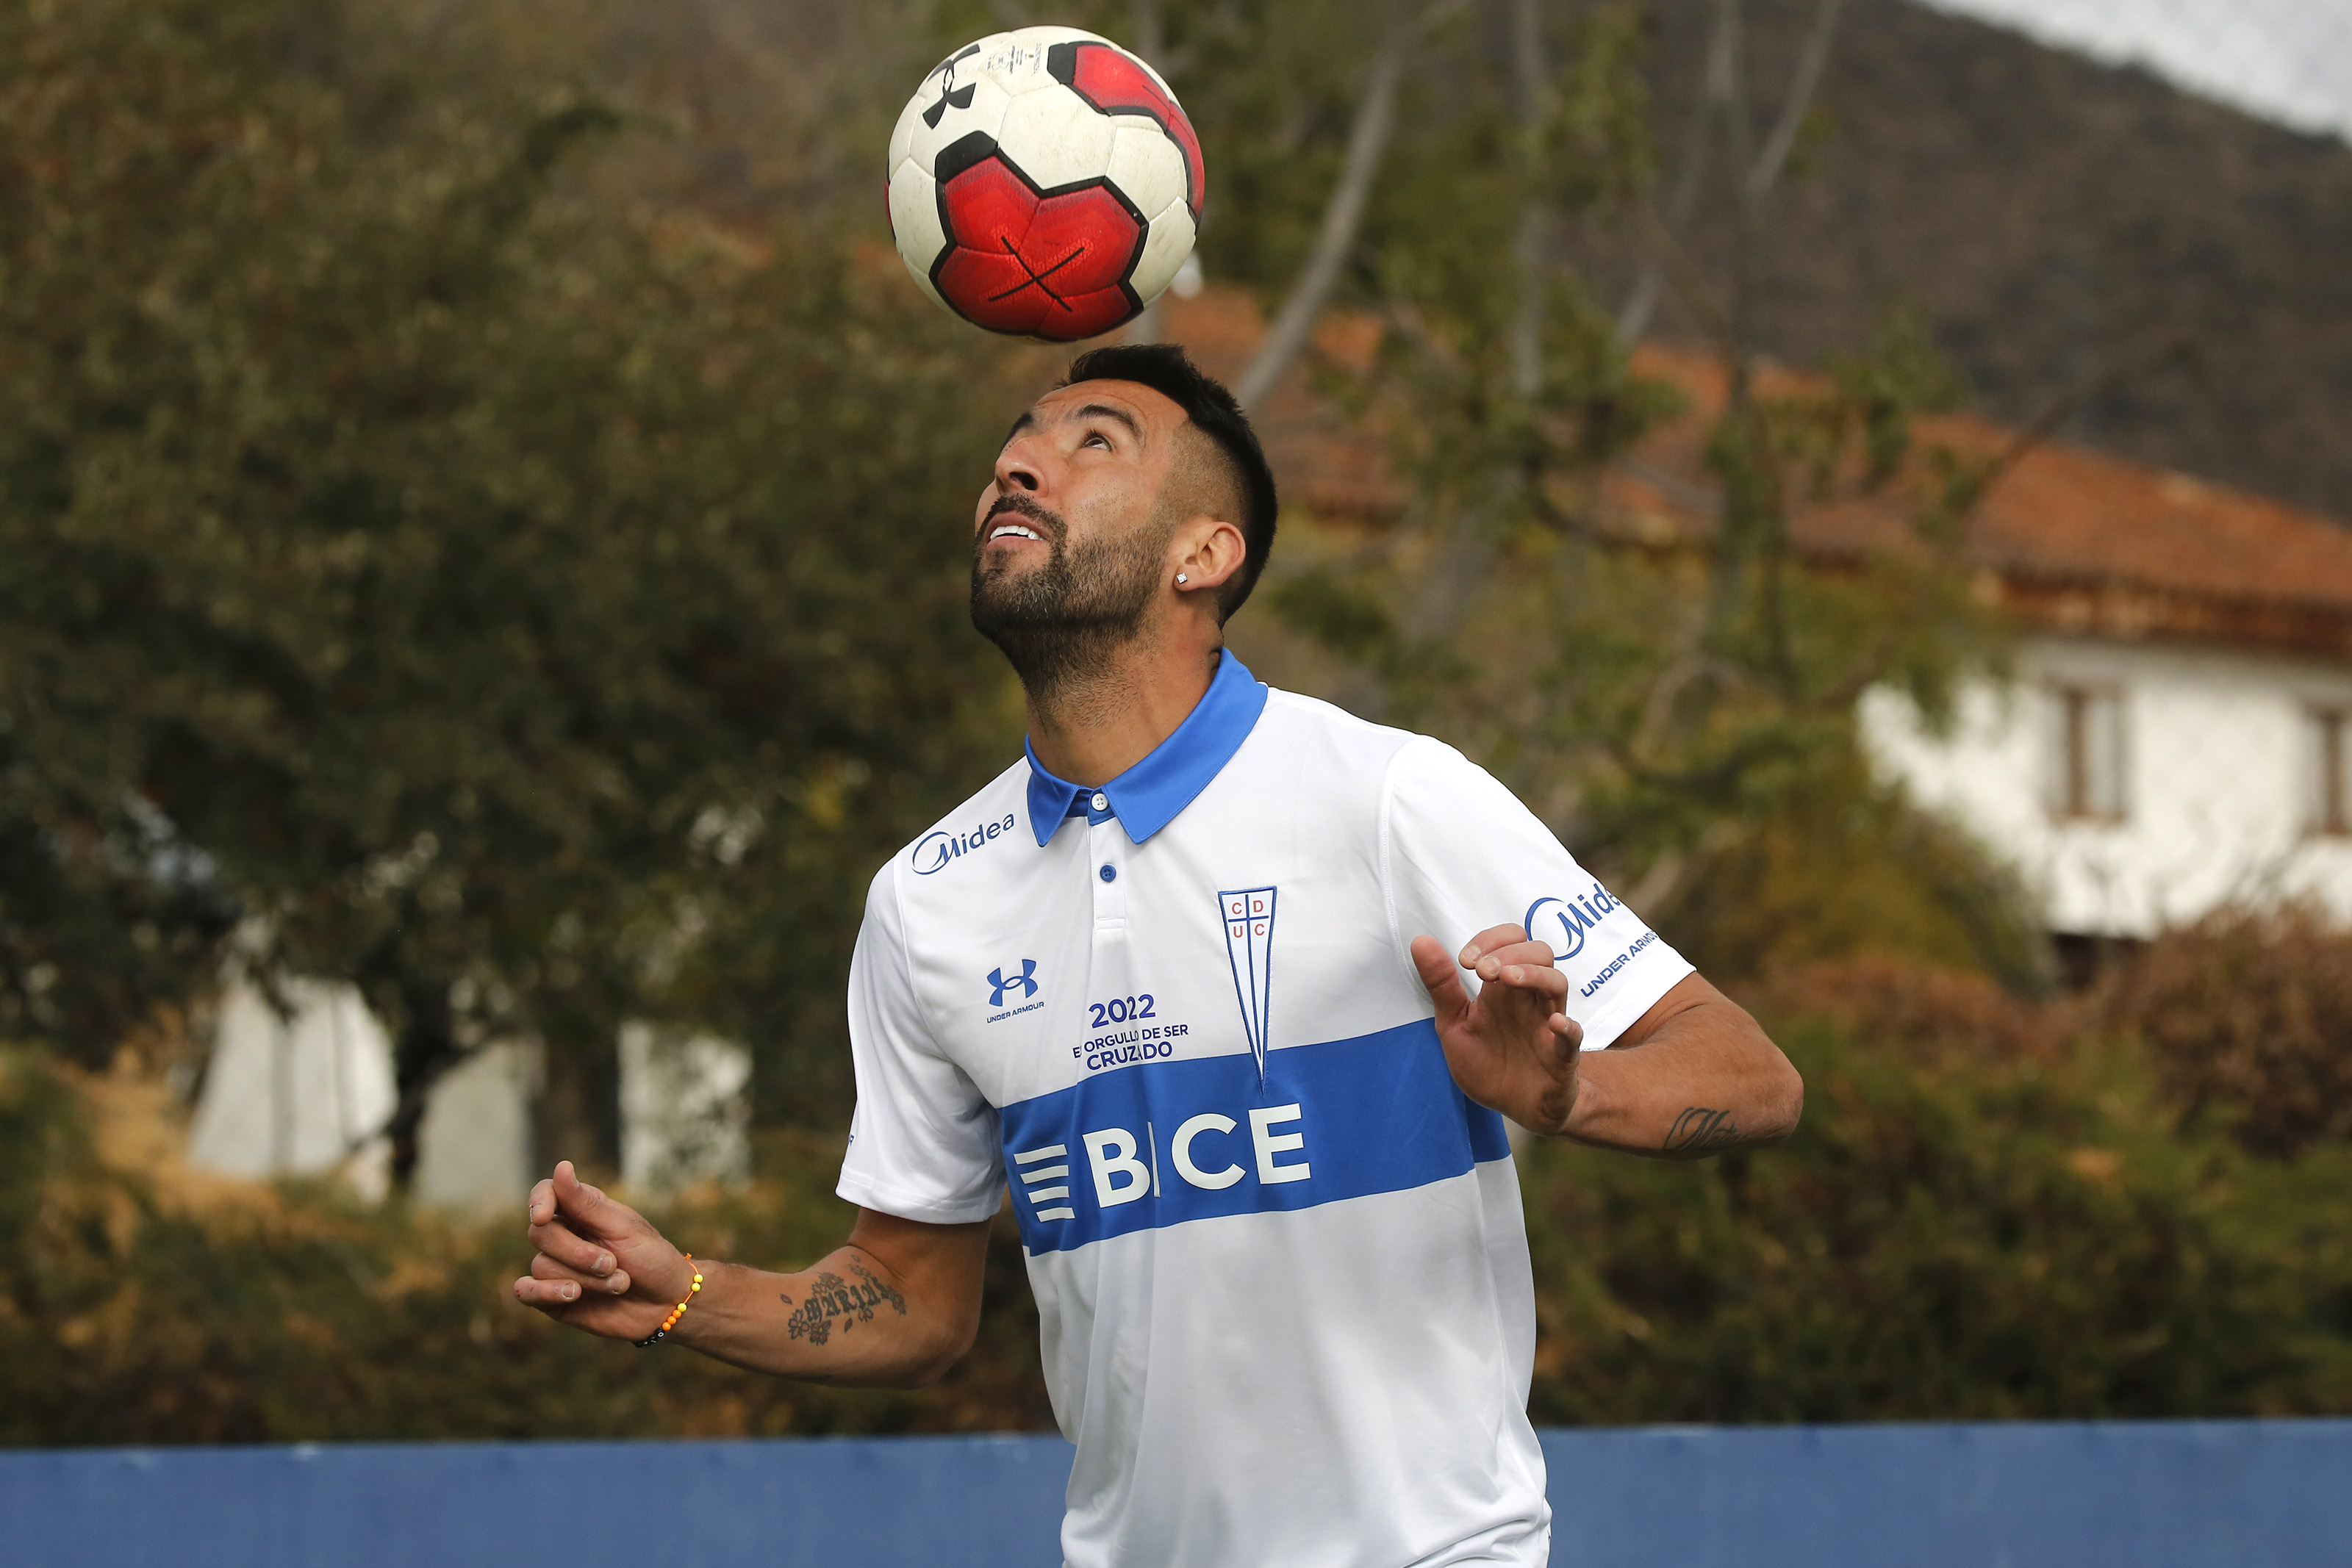 Maurício Isla é liberado da convocação da seleção chilena para turnê  asiática - 365Scores - Notícias de futebol